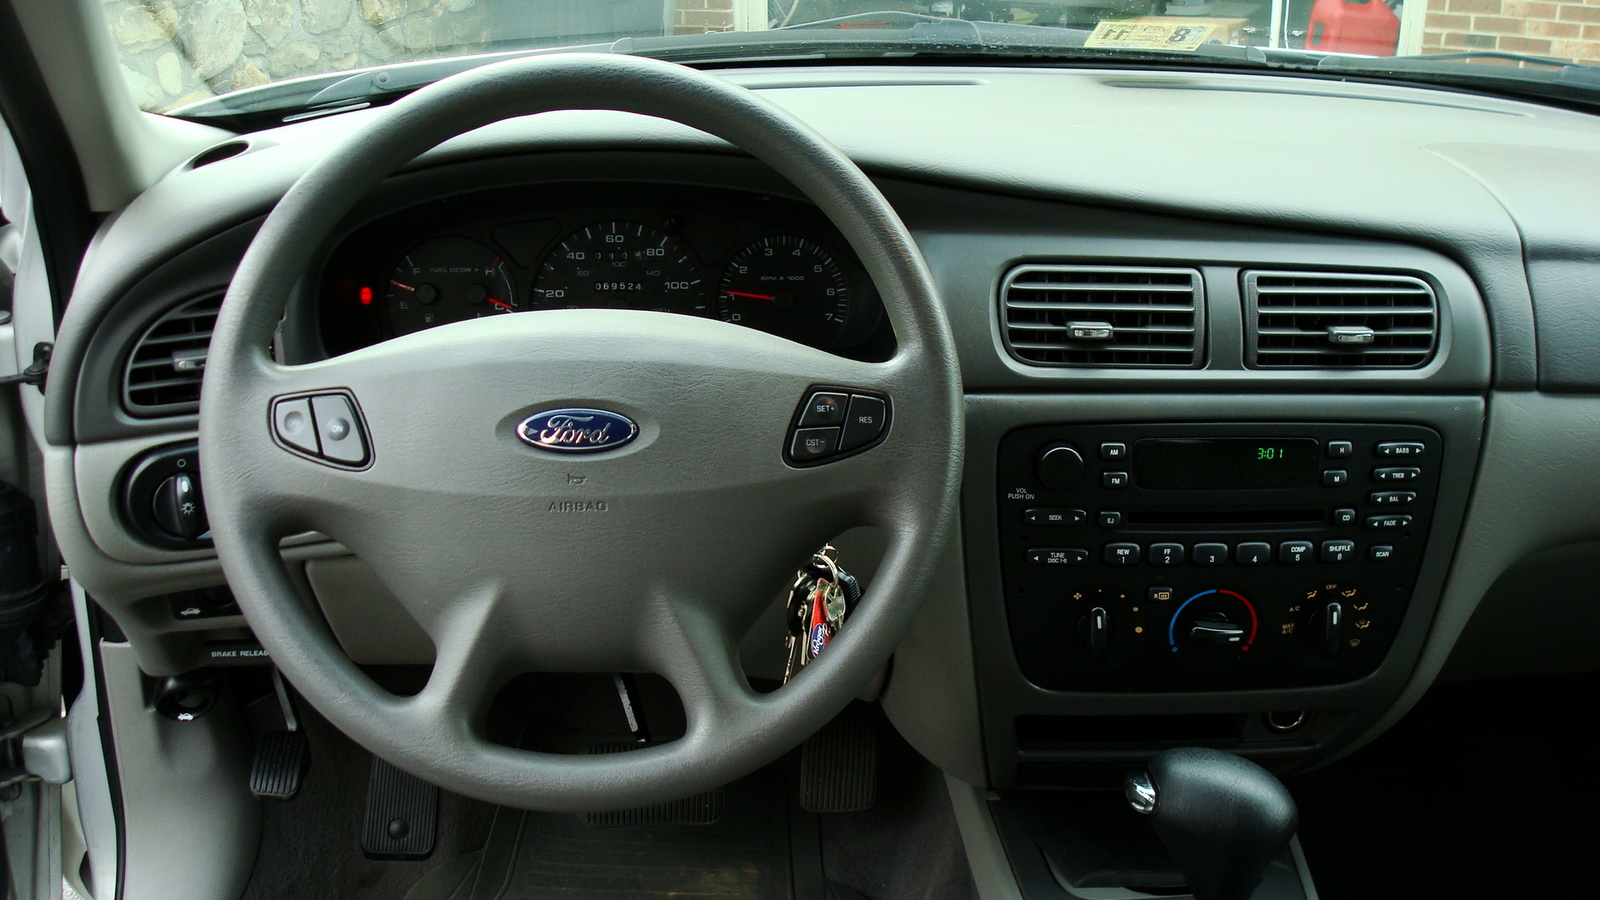 2003 Ford taurus interior photos #3